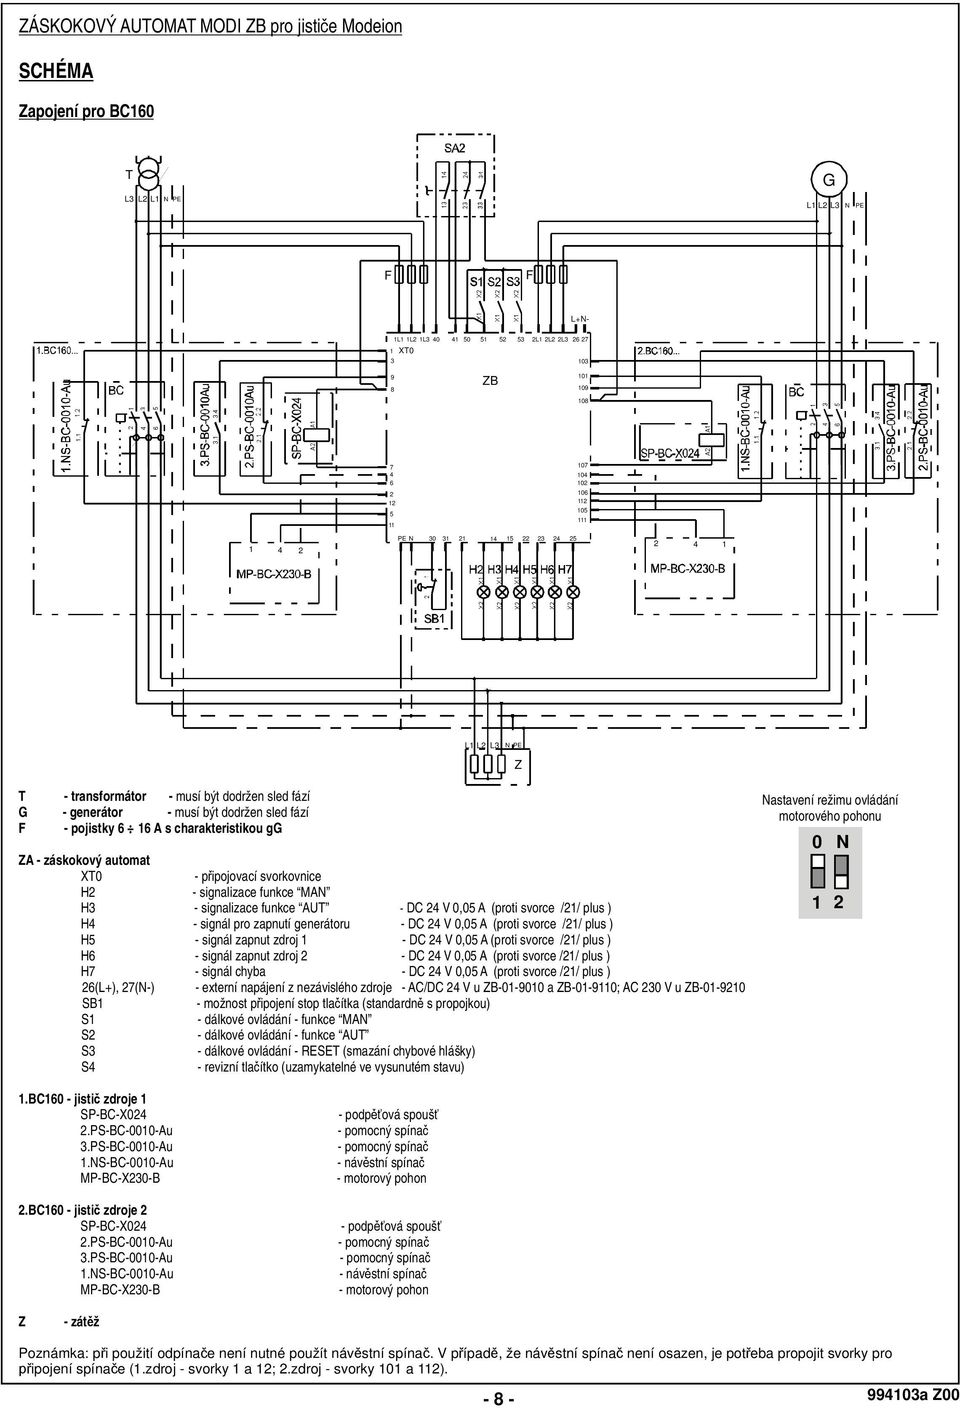 záskokový automat XT0 - p ipojovací svorkovnice H2 - signalizace funkce MAN H3 - signalizace funkce AUT - DC 24 V 0,05 A (proti svorce /21/ plus ) H4 - signál pro zapnutí generátoru - DC 24 V 0,05 A